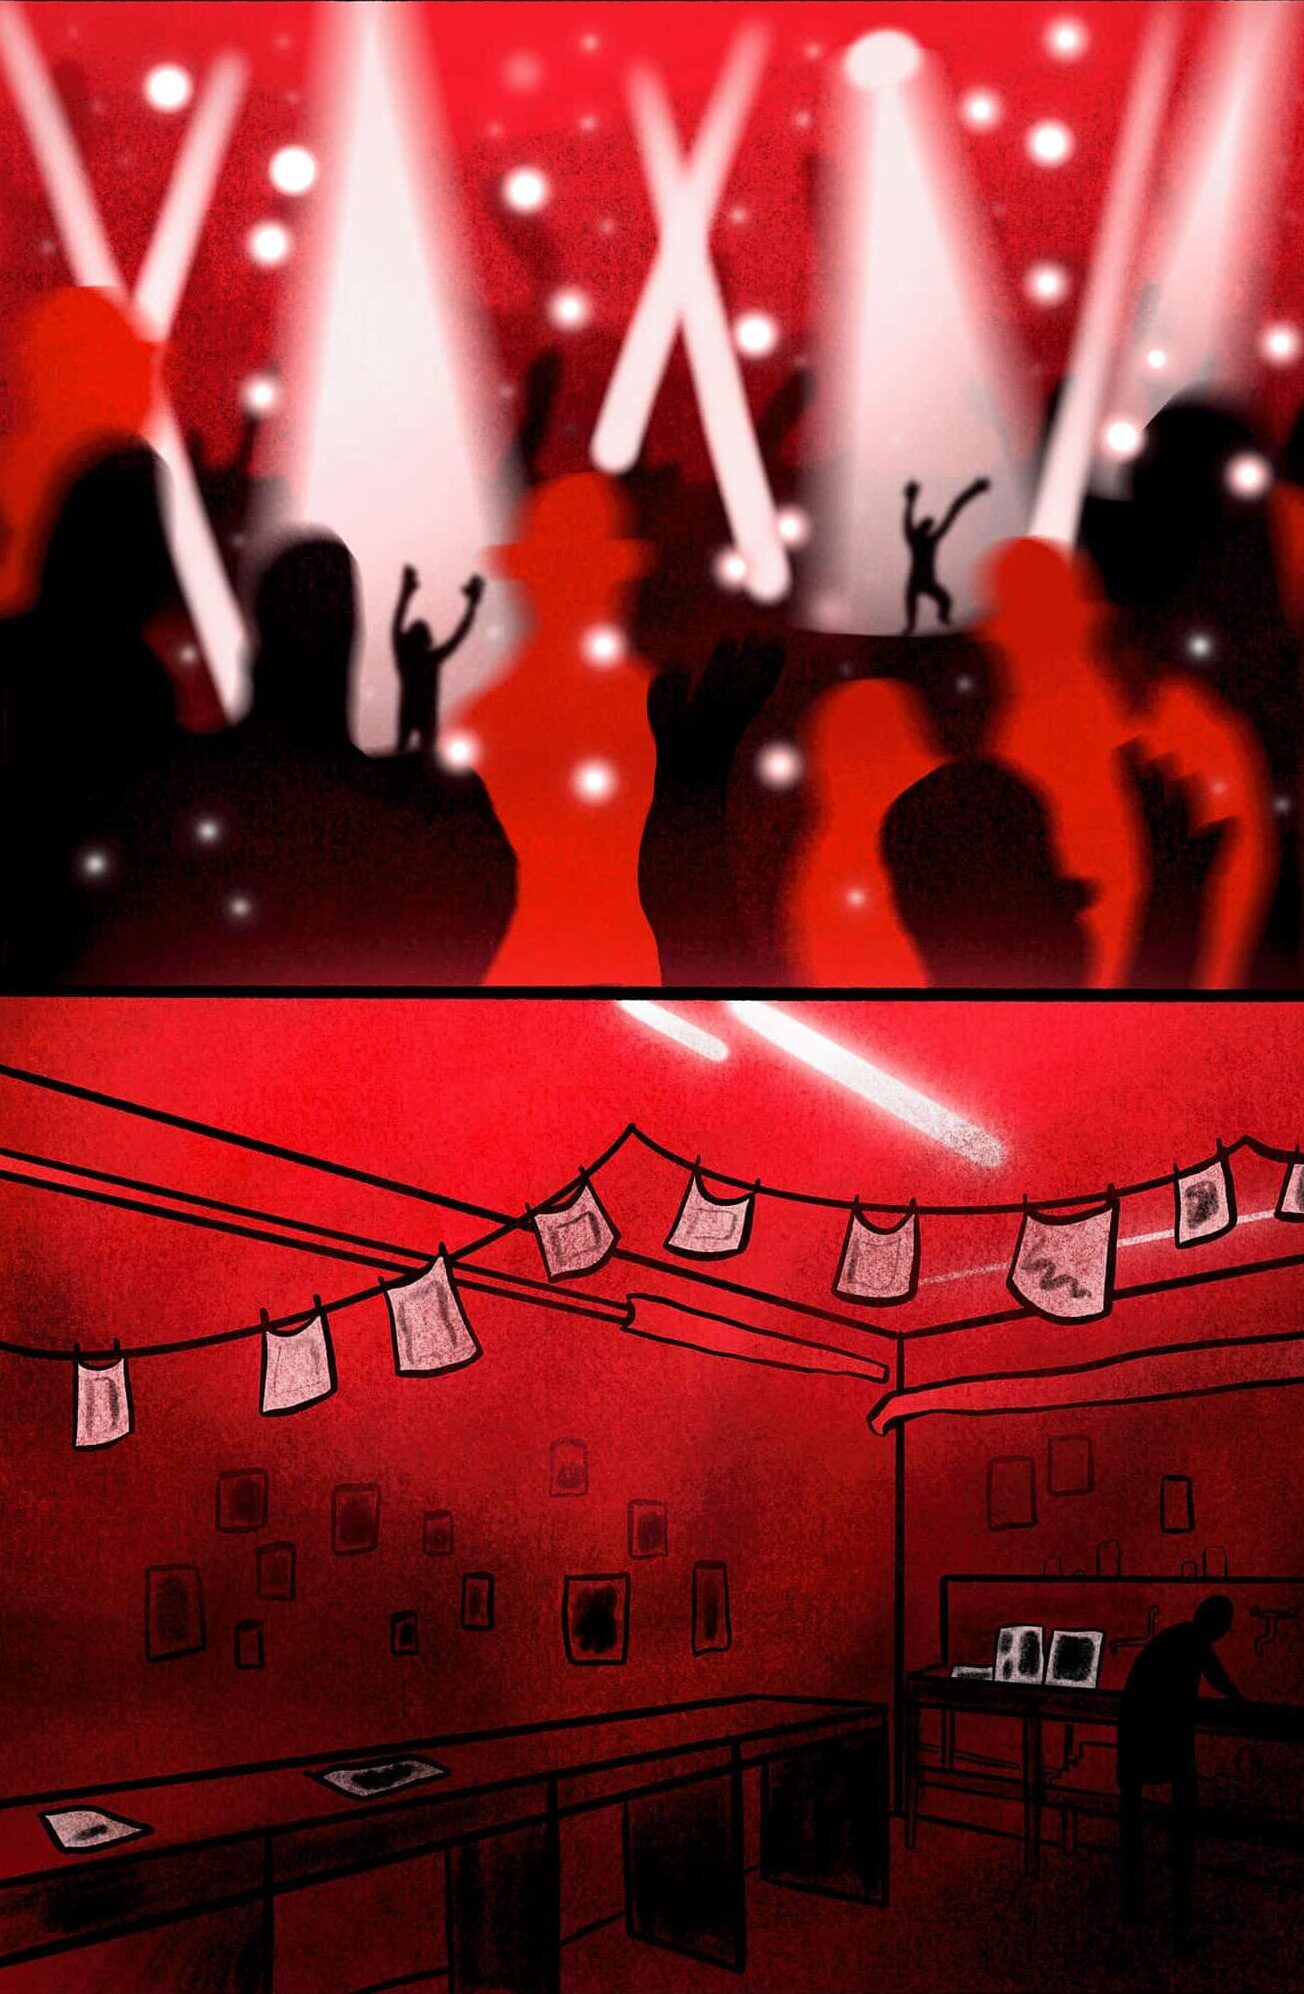 Tegning af rødt rum med projektører, hvor folk danser og et mørkekammer. Illustration til Operaen i Midtens forestilling "Dark Room"